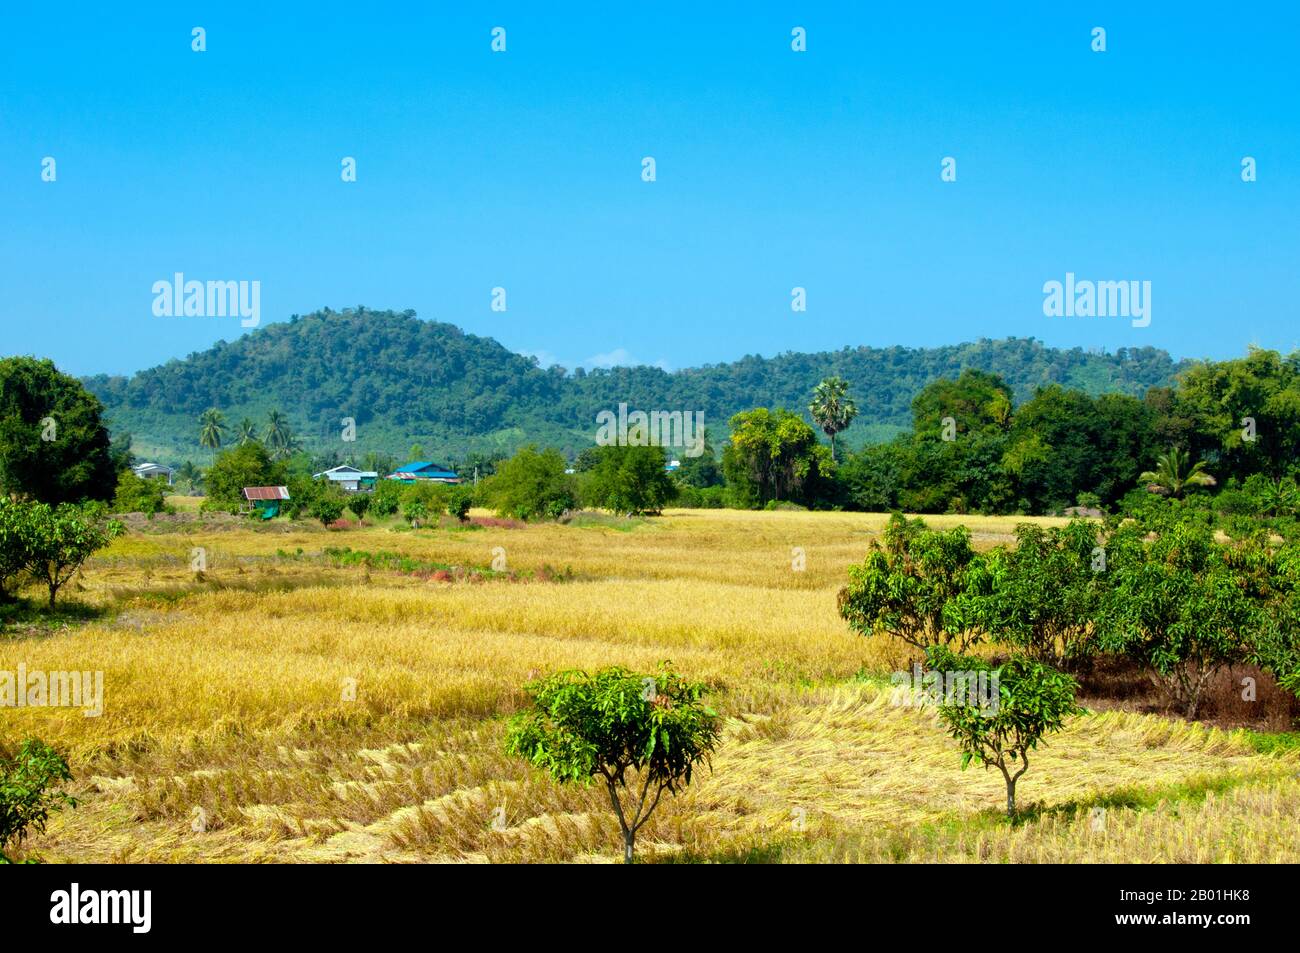 Thailand: Reisernte auf Feldern in der Nähe des Mekong, Provinz Loei. Die Provinz Loei befindet sich im oberen Nordosten Thailands. Die benachbarten Provinzen sind (von Osten nach rechts) Nong Khai, Udon Thani, Nongbua Lamphu, Khon Kaen, Phetchabun, Phitsanulok. Im Norden grenzt sie an die Provinzen Xaignabouli und Vientiane in Laos. Die Provinz ist von niedrigen Bergen bedeckt, während die Hauptstadt Loei in einem fruchtbaren Becken liegt. Der Fluss Loei, der durch die Provinz fließt, ist ein Nebenfluss des Mekong, der zusammen mit dem kleineren Fluss Hueang die nördliche Grenze der Provinz bildet. Stockfoto